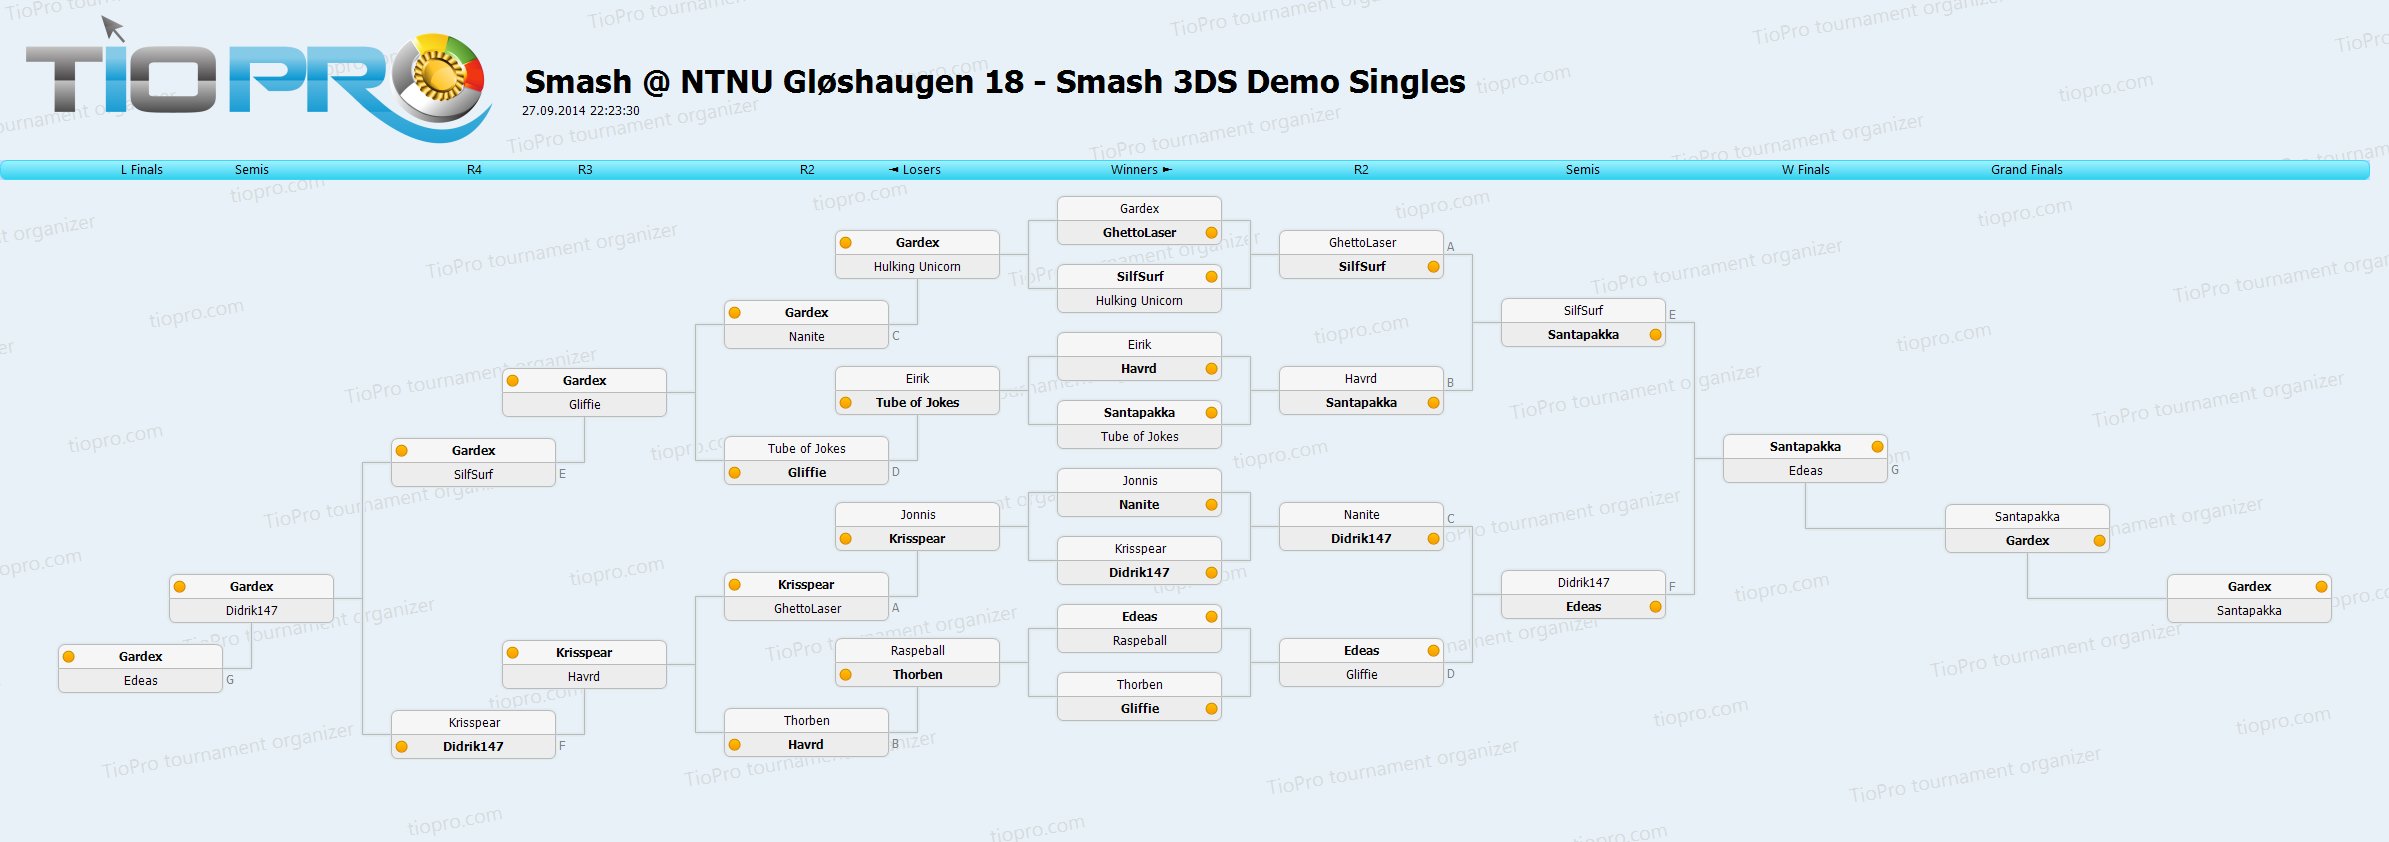 S@NG 18 - Smash 3DS Demo Singles